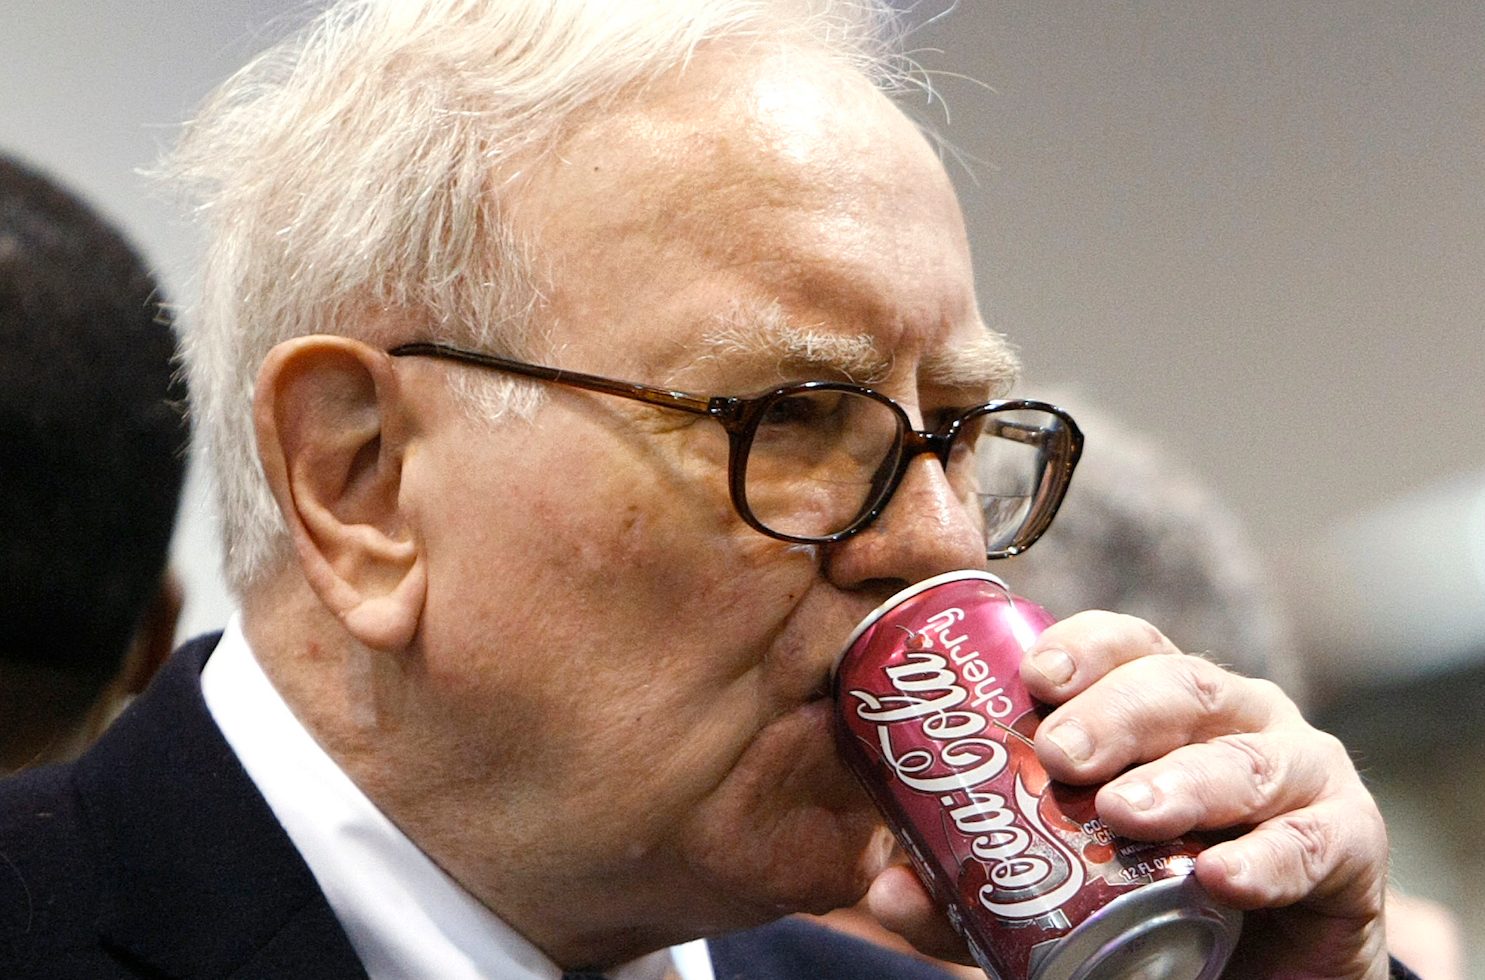 Warren Buffett houdt van Cherry Coke